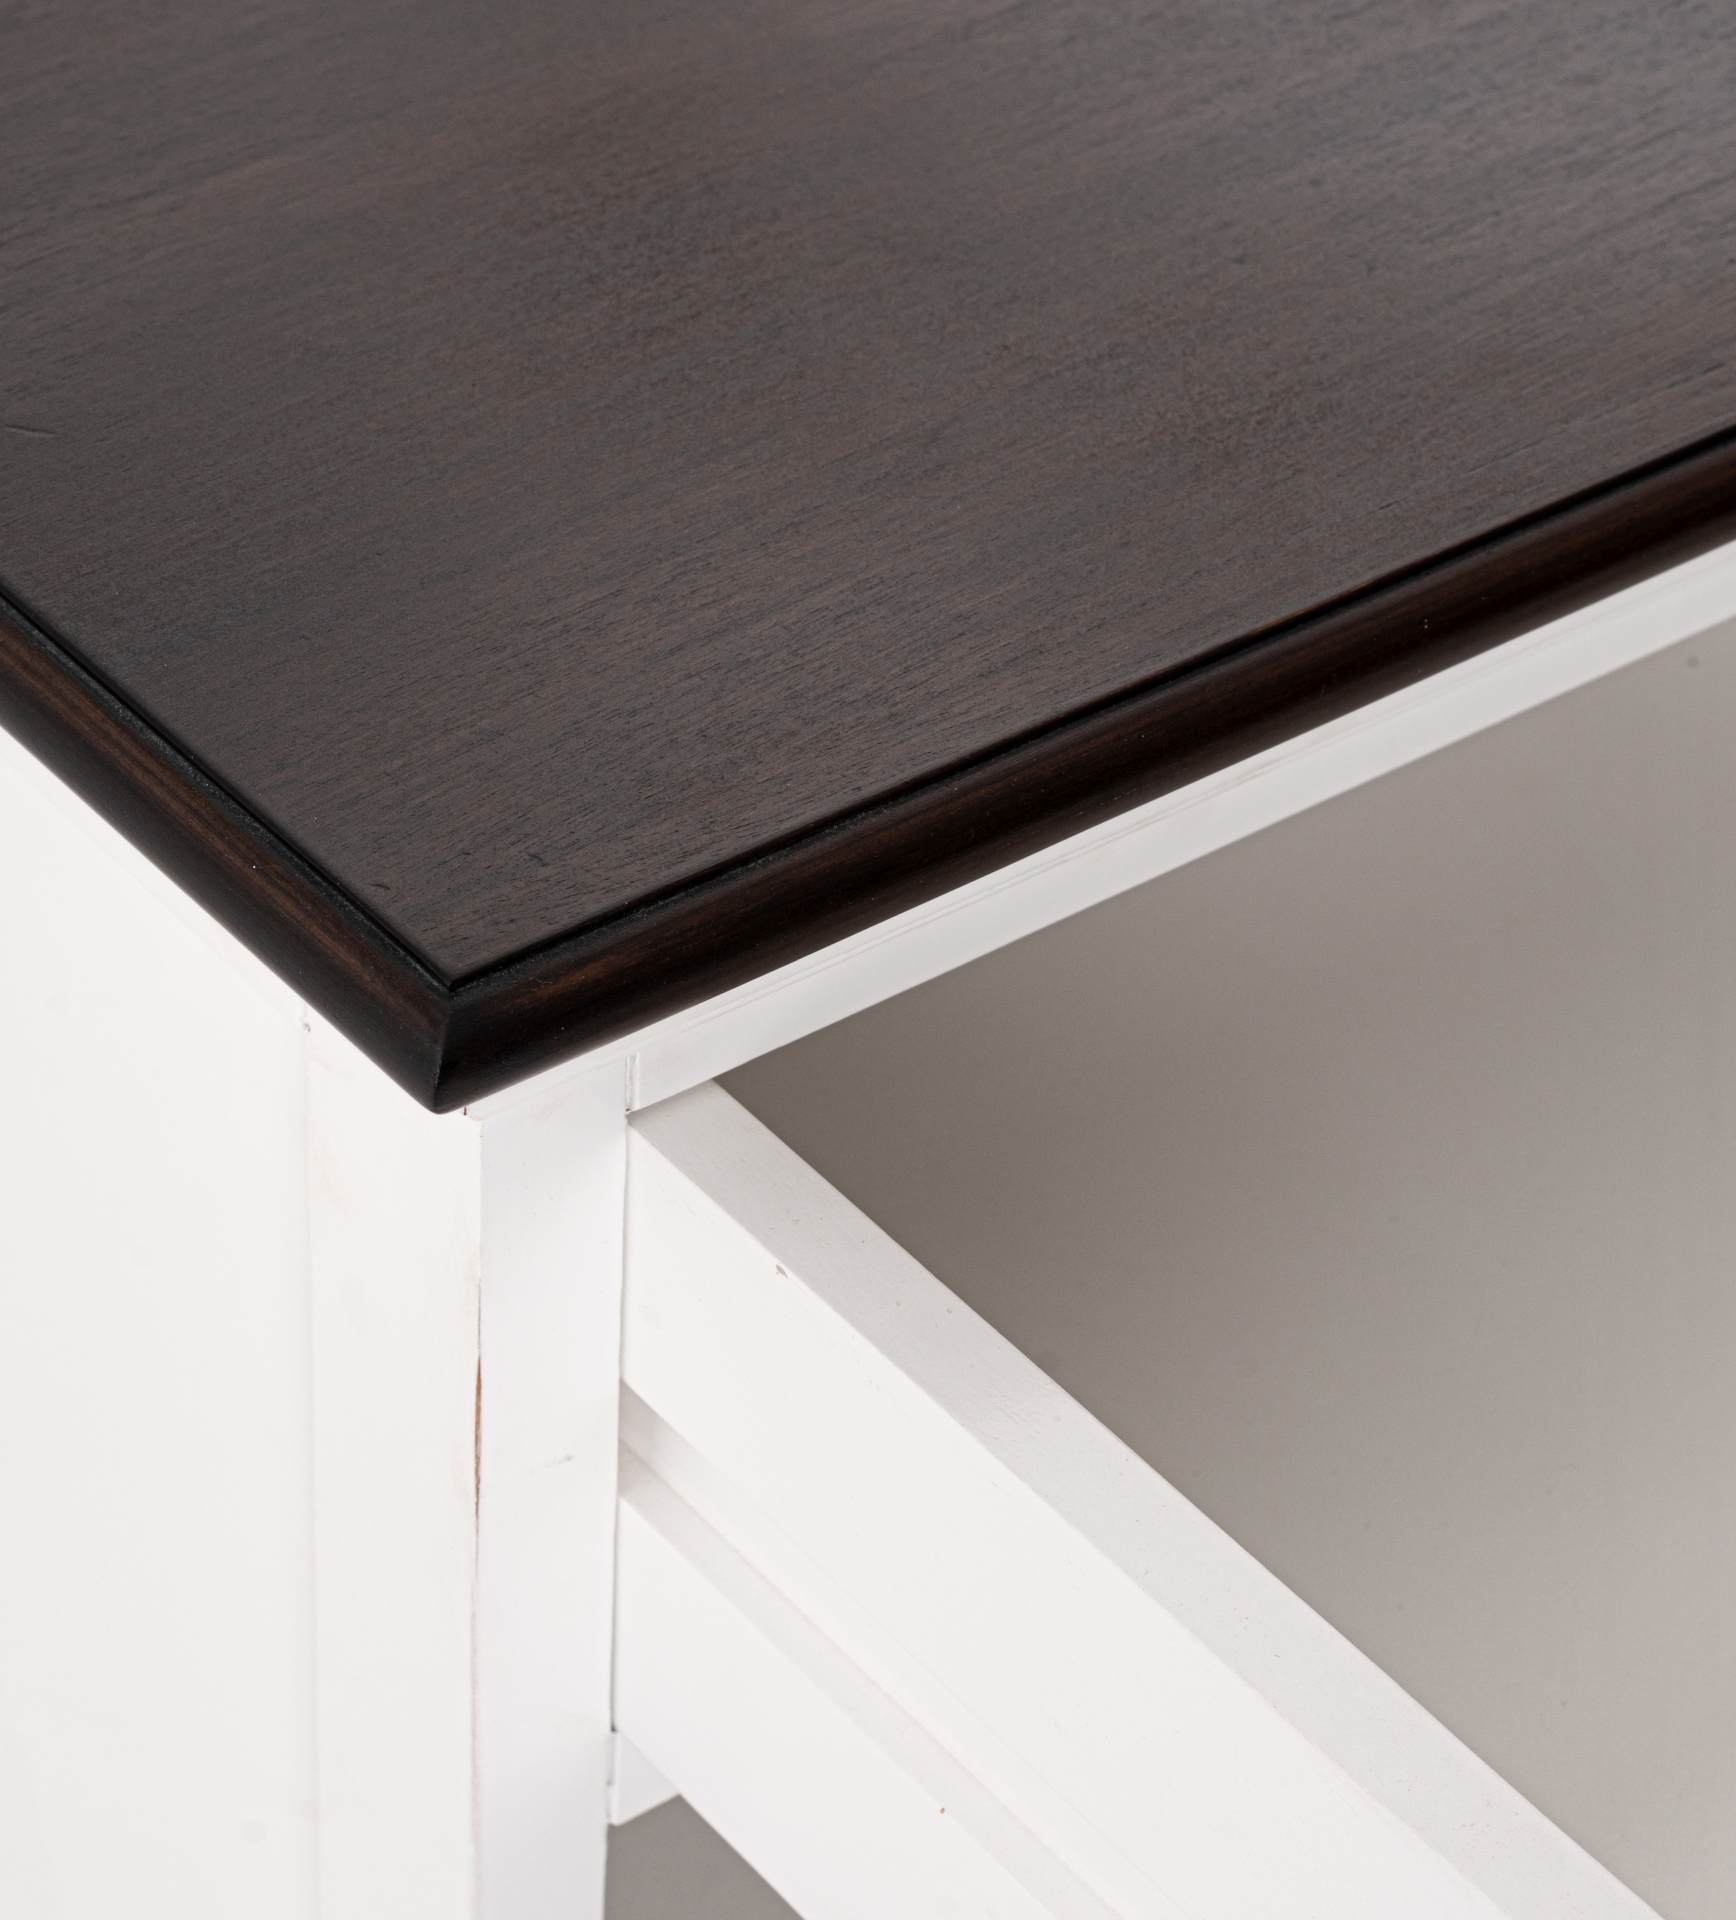 Der Nachttisch Halifax Accent überzeugt mit seinem Landhaus Stil. Gefertigt wurde er aus Mahagoni Holz, welches einen Weißen Farbton besitzt. Der Nachttisch verfügt über eine Schublade und zwei offene Fächer.